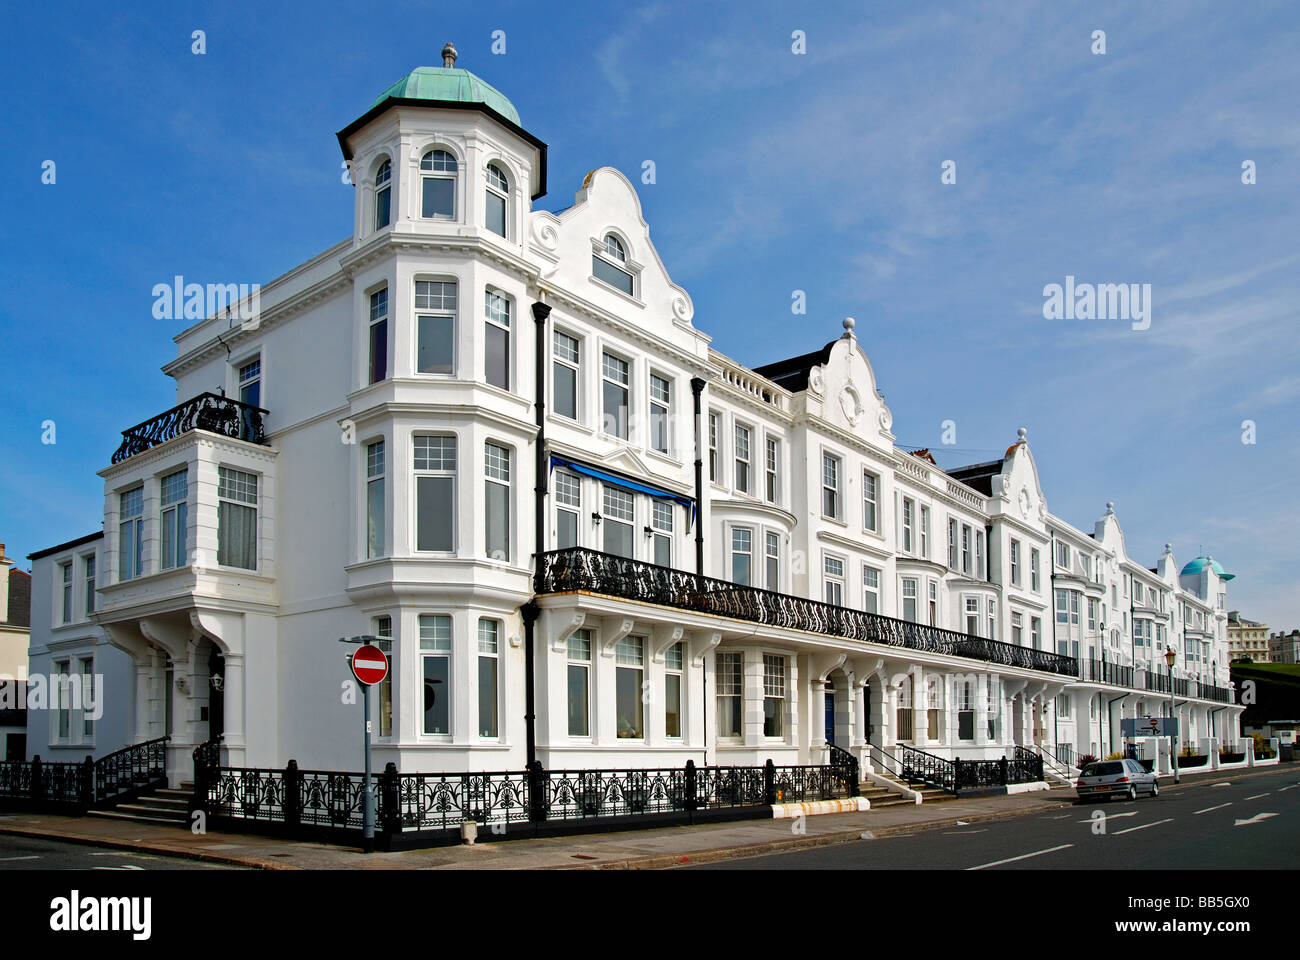 Immeuble sur grand parade sur le front de mer à plymouth dans le Devon, Angleterre, Royaume-Uni Banque D'Images